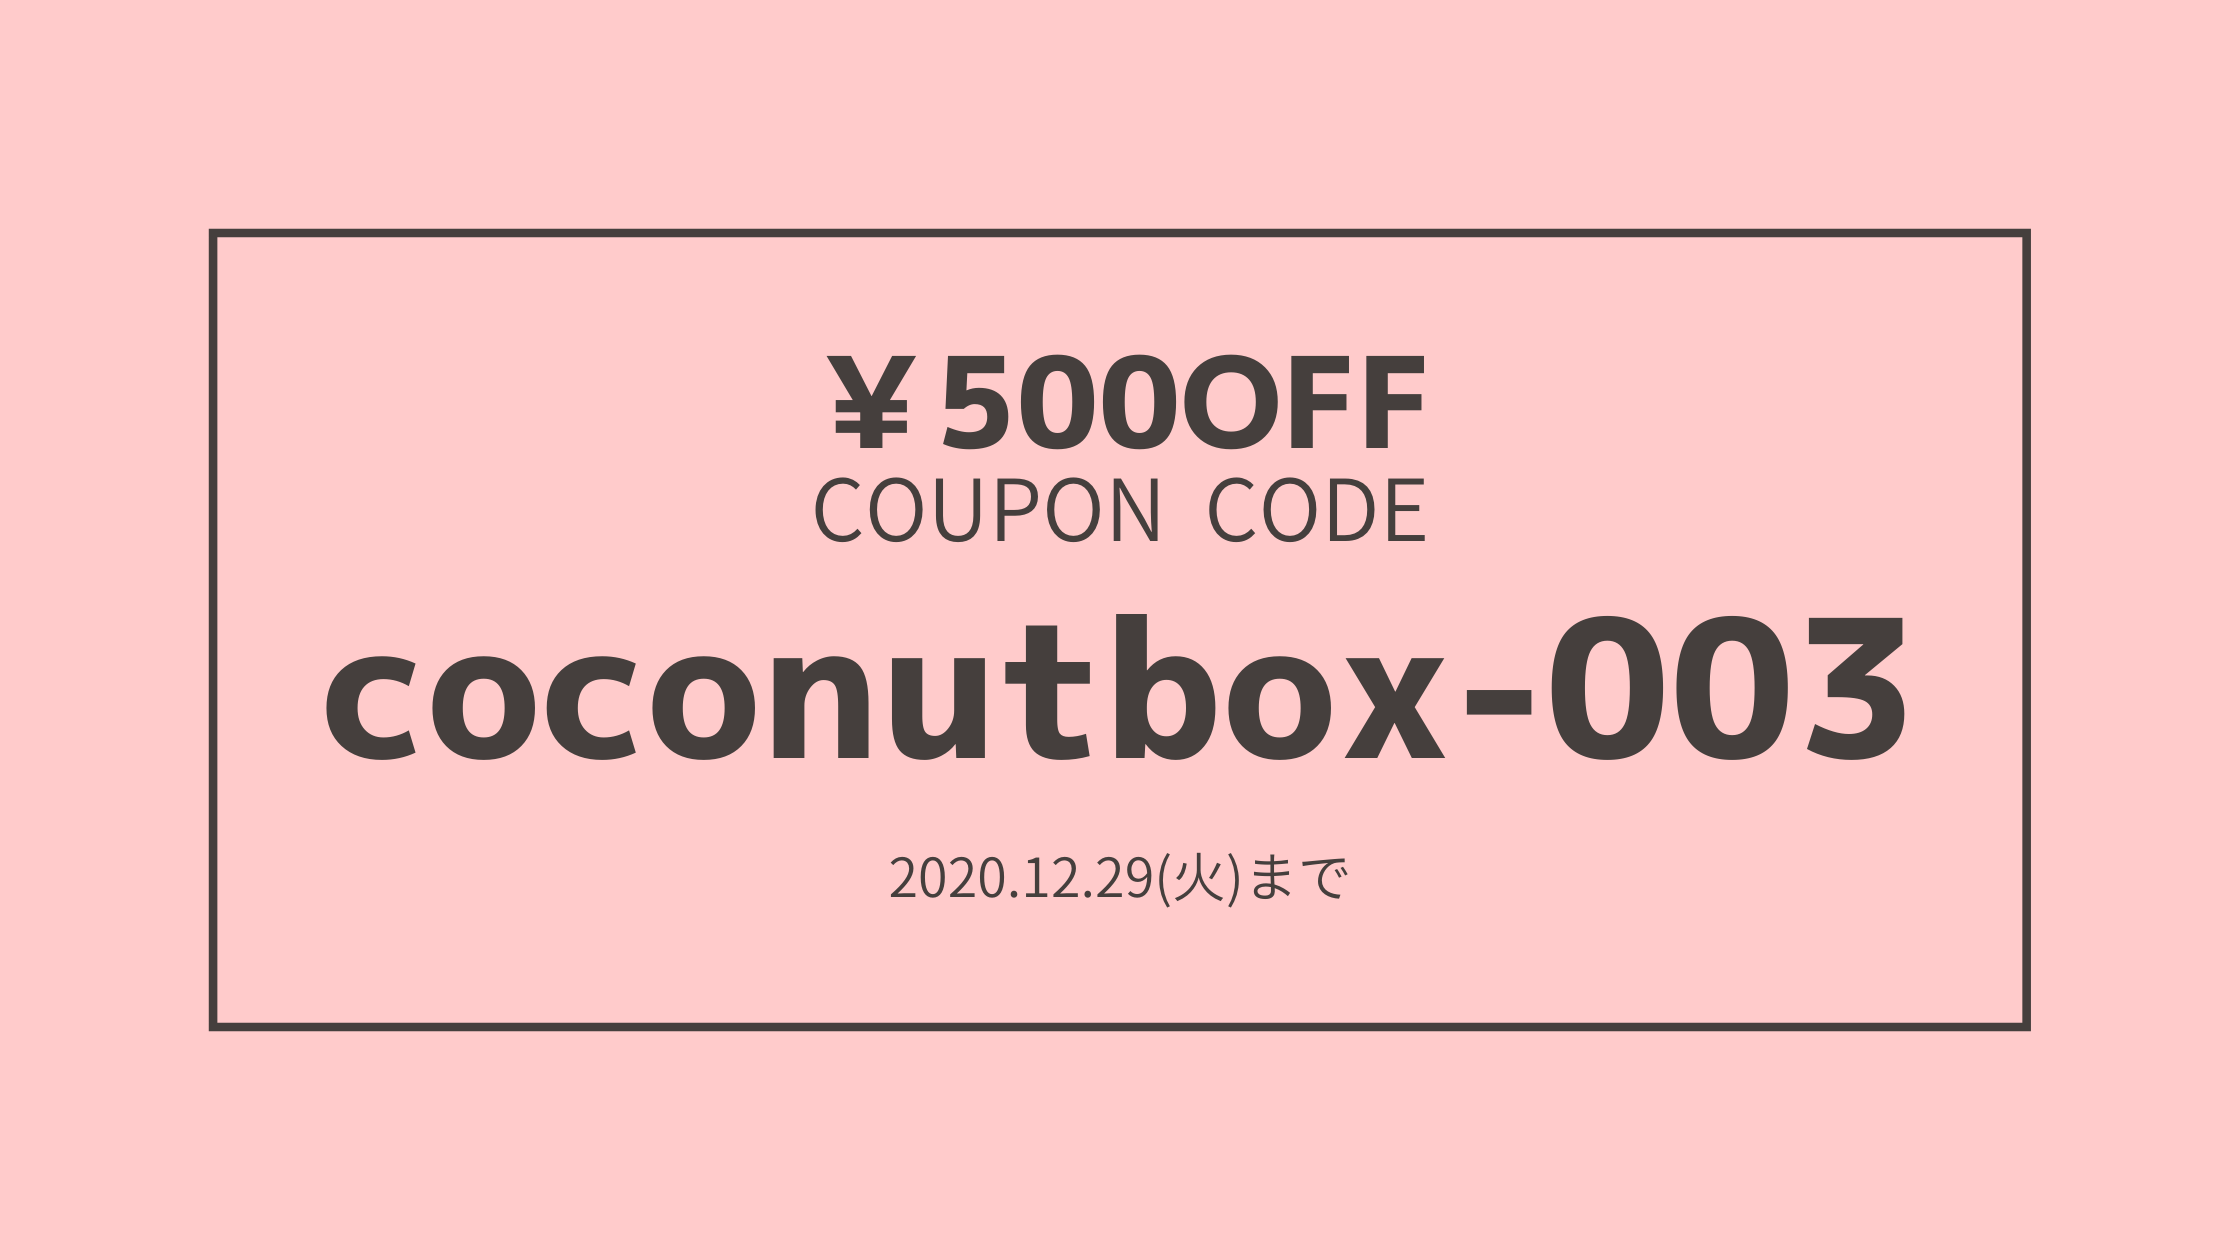 年末のお買い物応援クーポンプレゼント!!　番号はcoconutbox-003です。